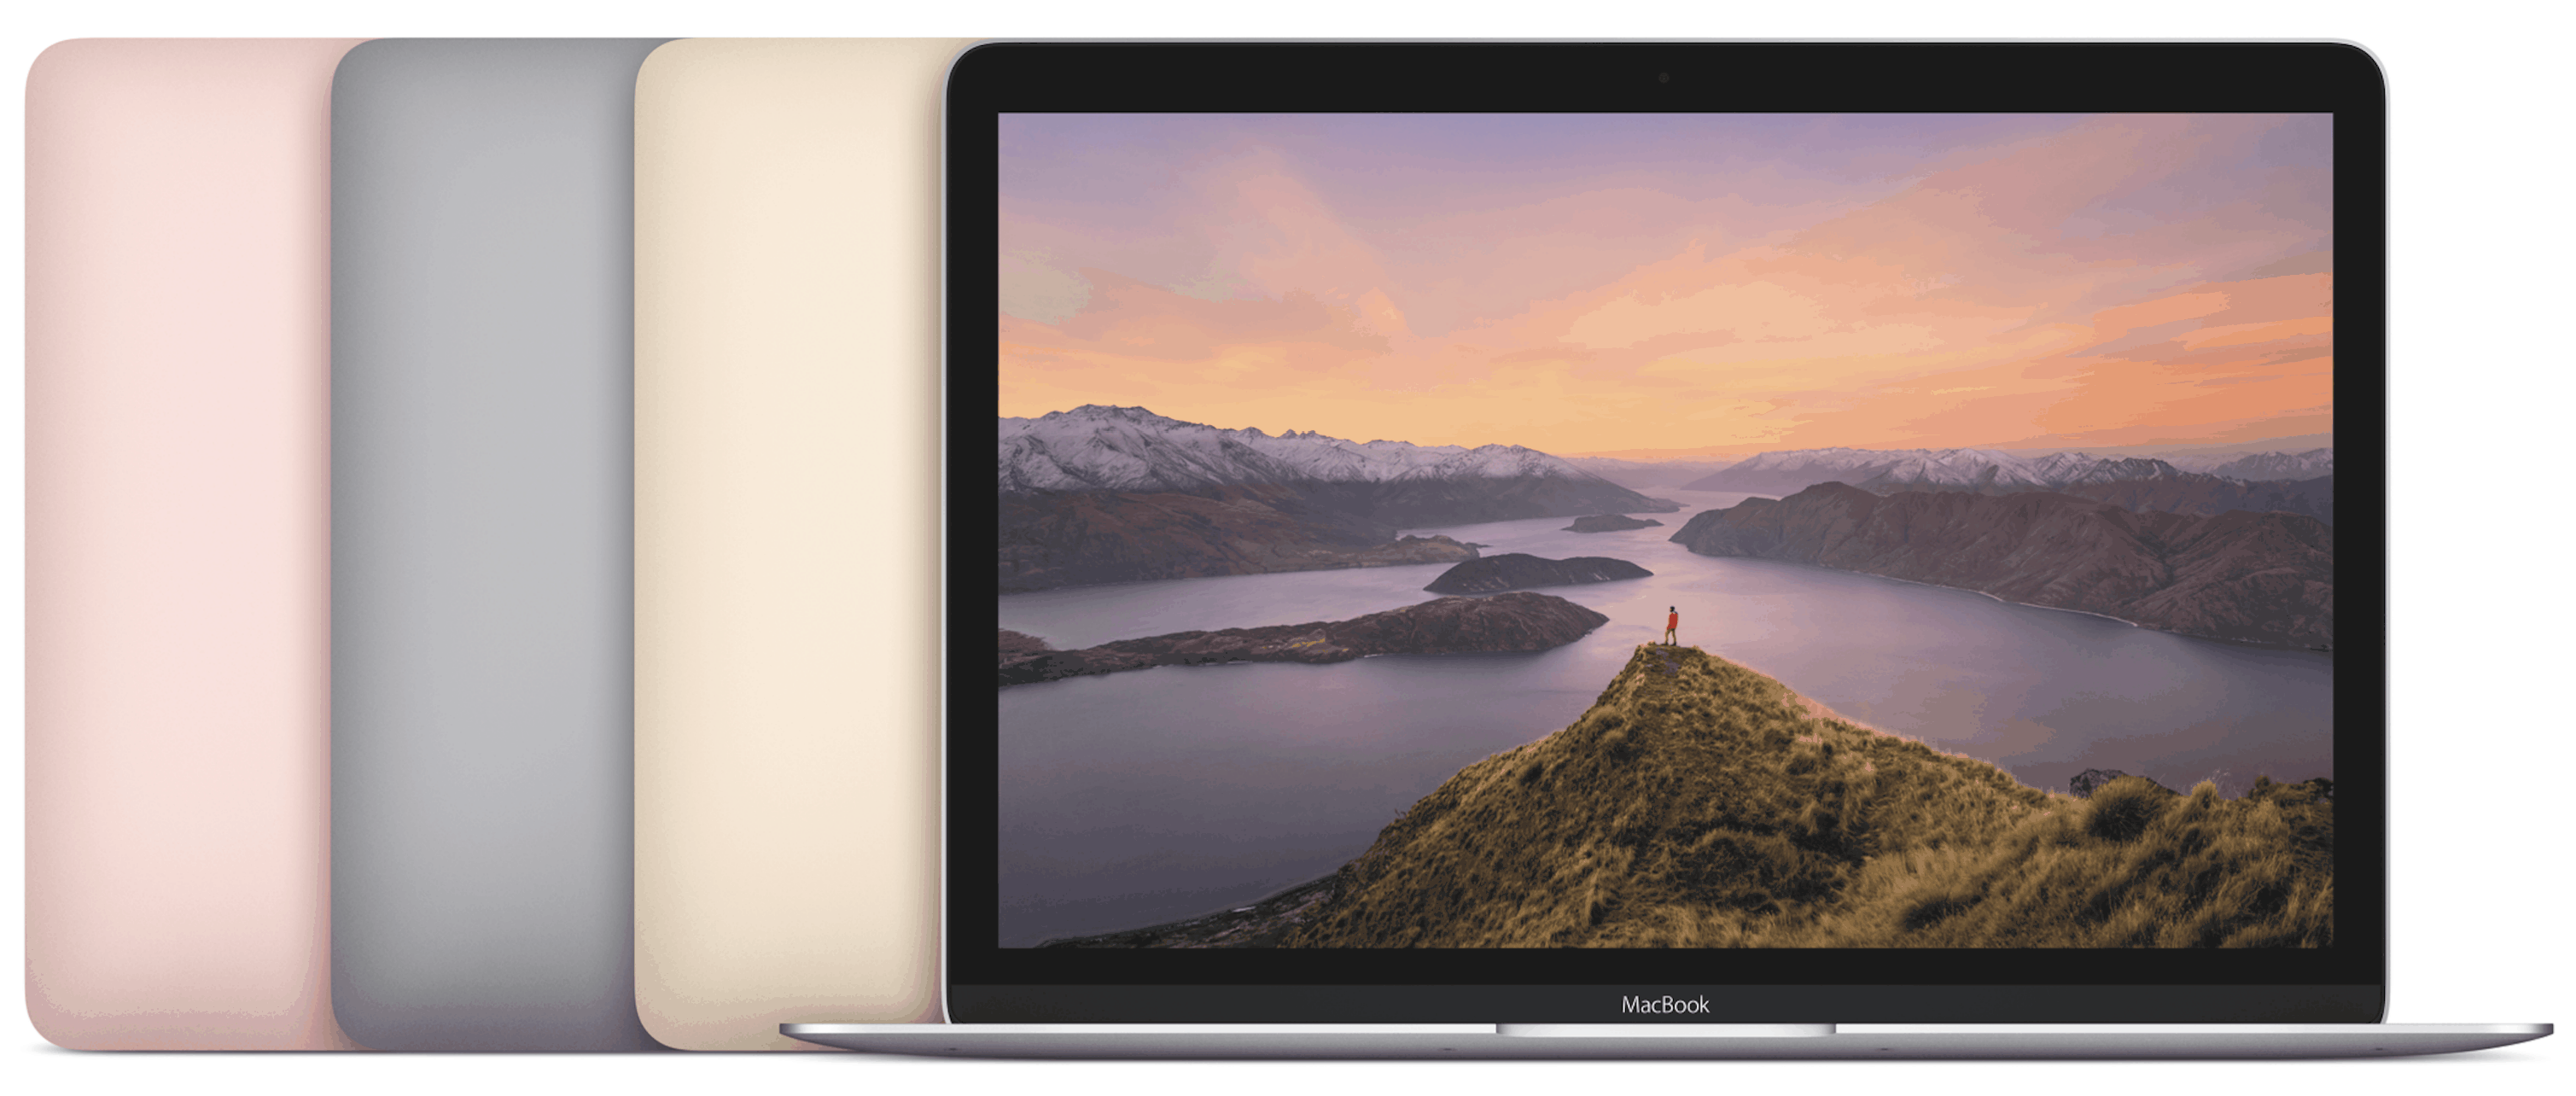 12-inch MacBook lineup